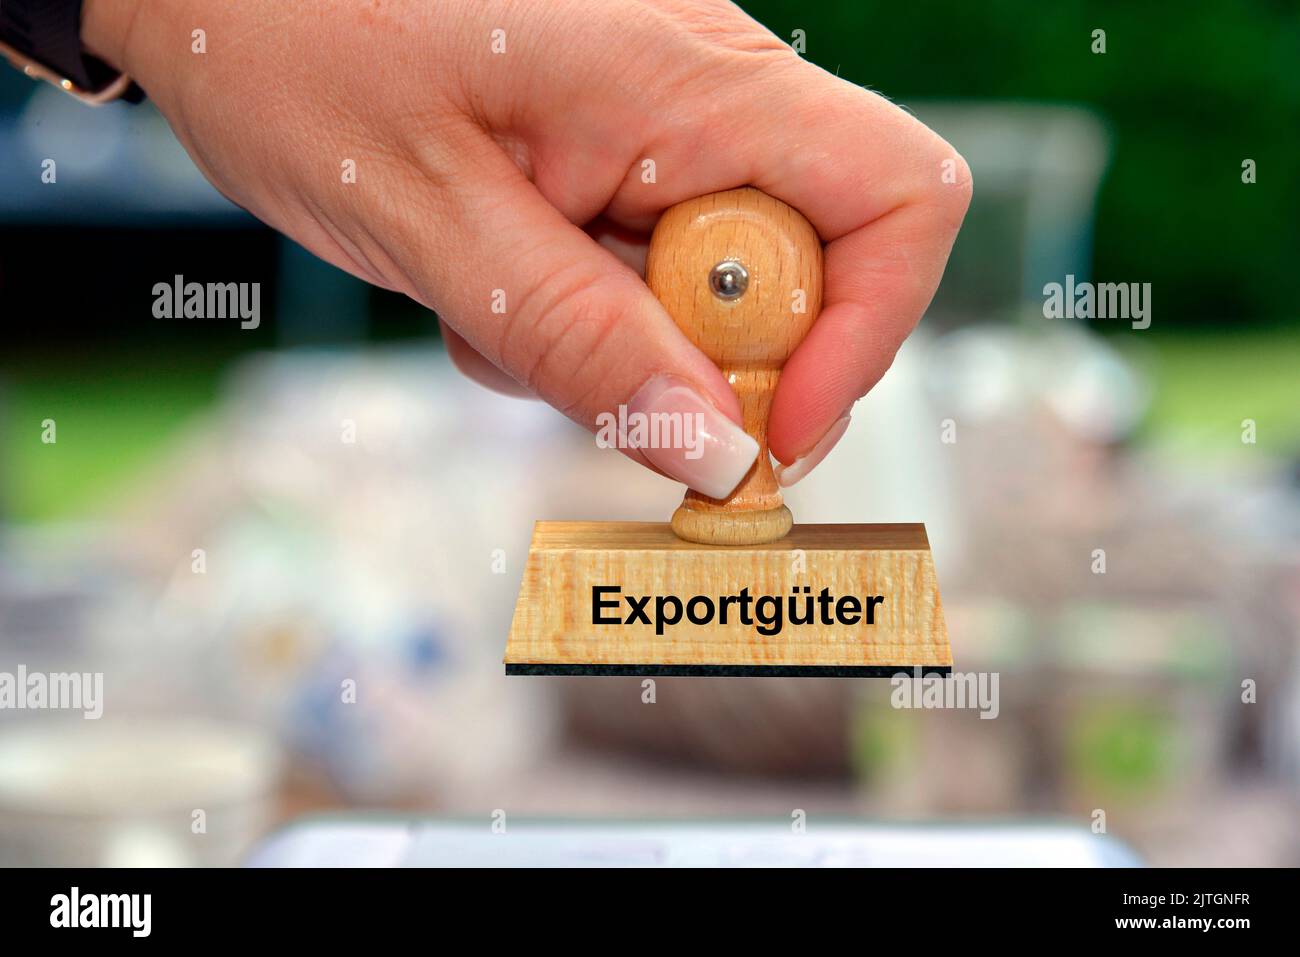 Main d'une femme avec un cachet Exportgueter, marchandises d'exportation, Allemagne Banque D'Images